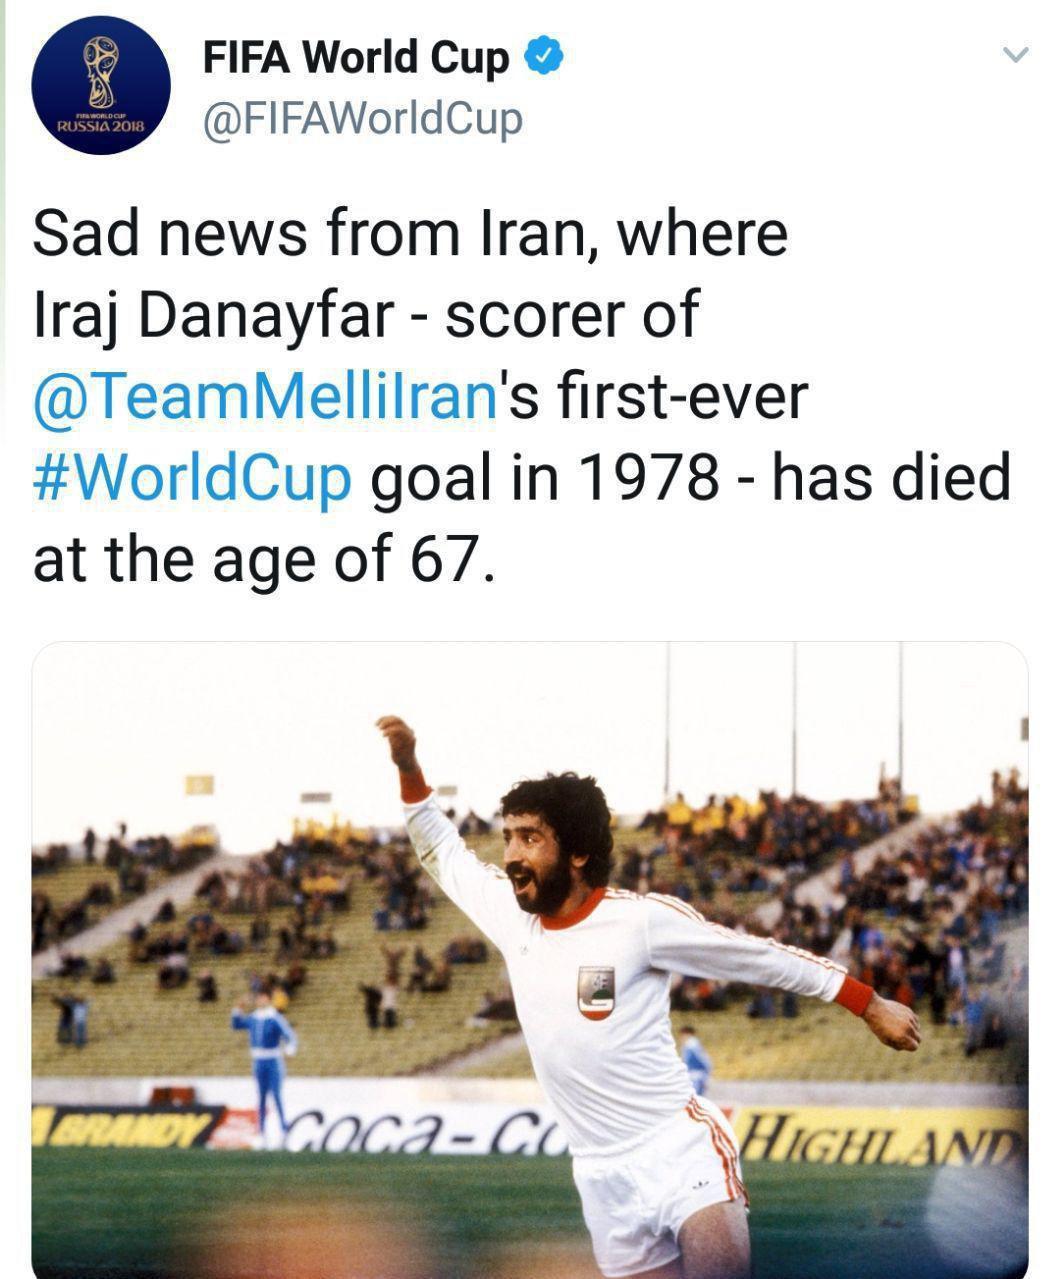 ستاره سرشناس و اولین گلزن ایران در جام جهانی در گذشت + تصاویر